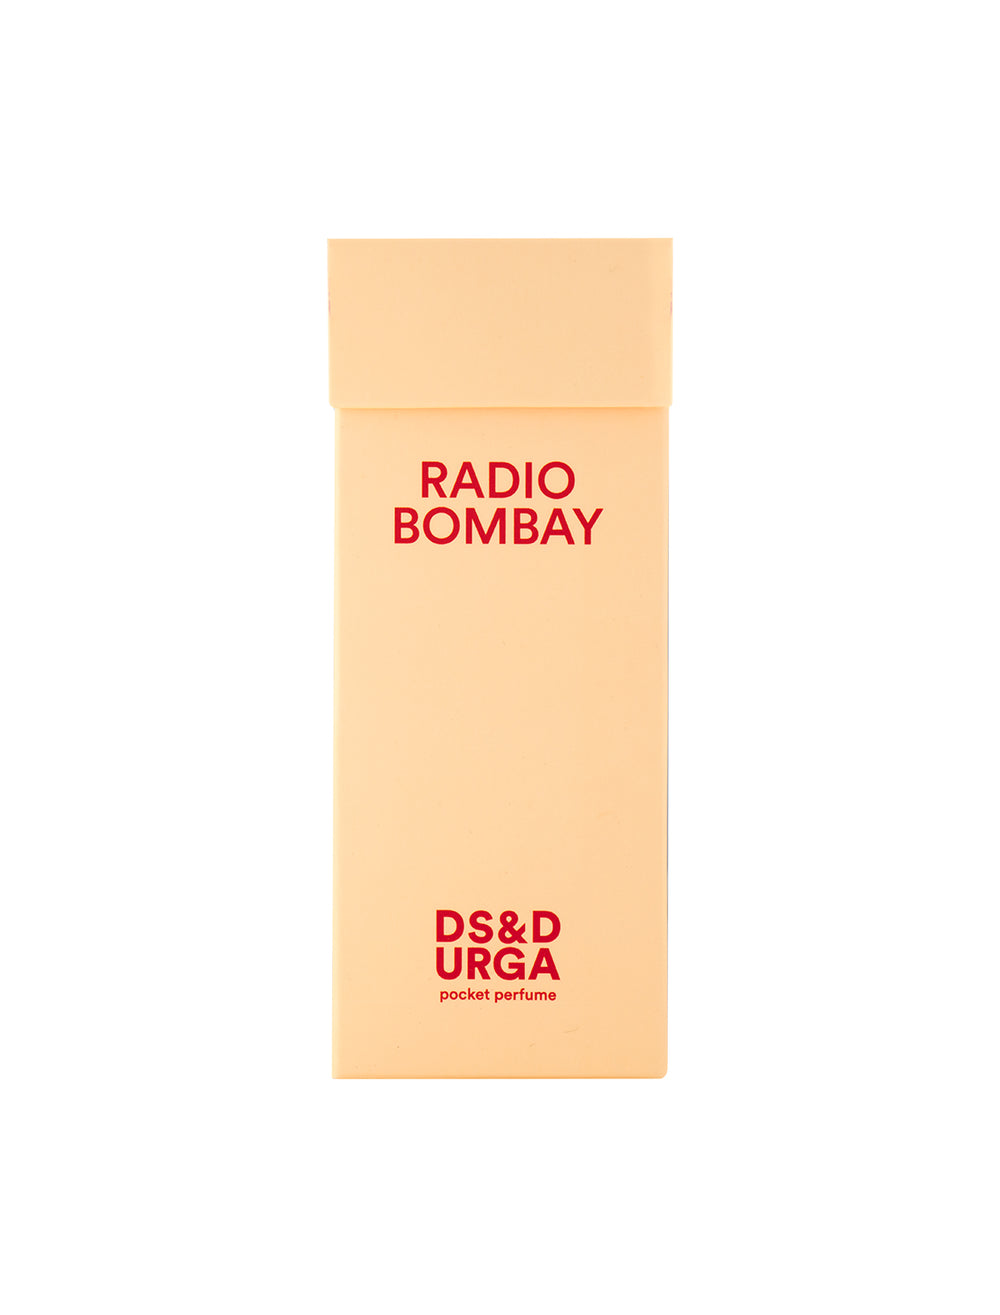 D.S. & Durga's radio bombay pocket perfume.